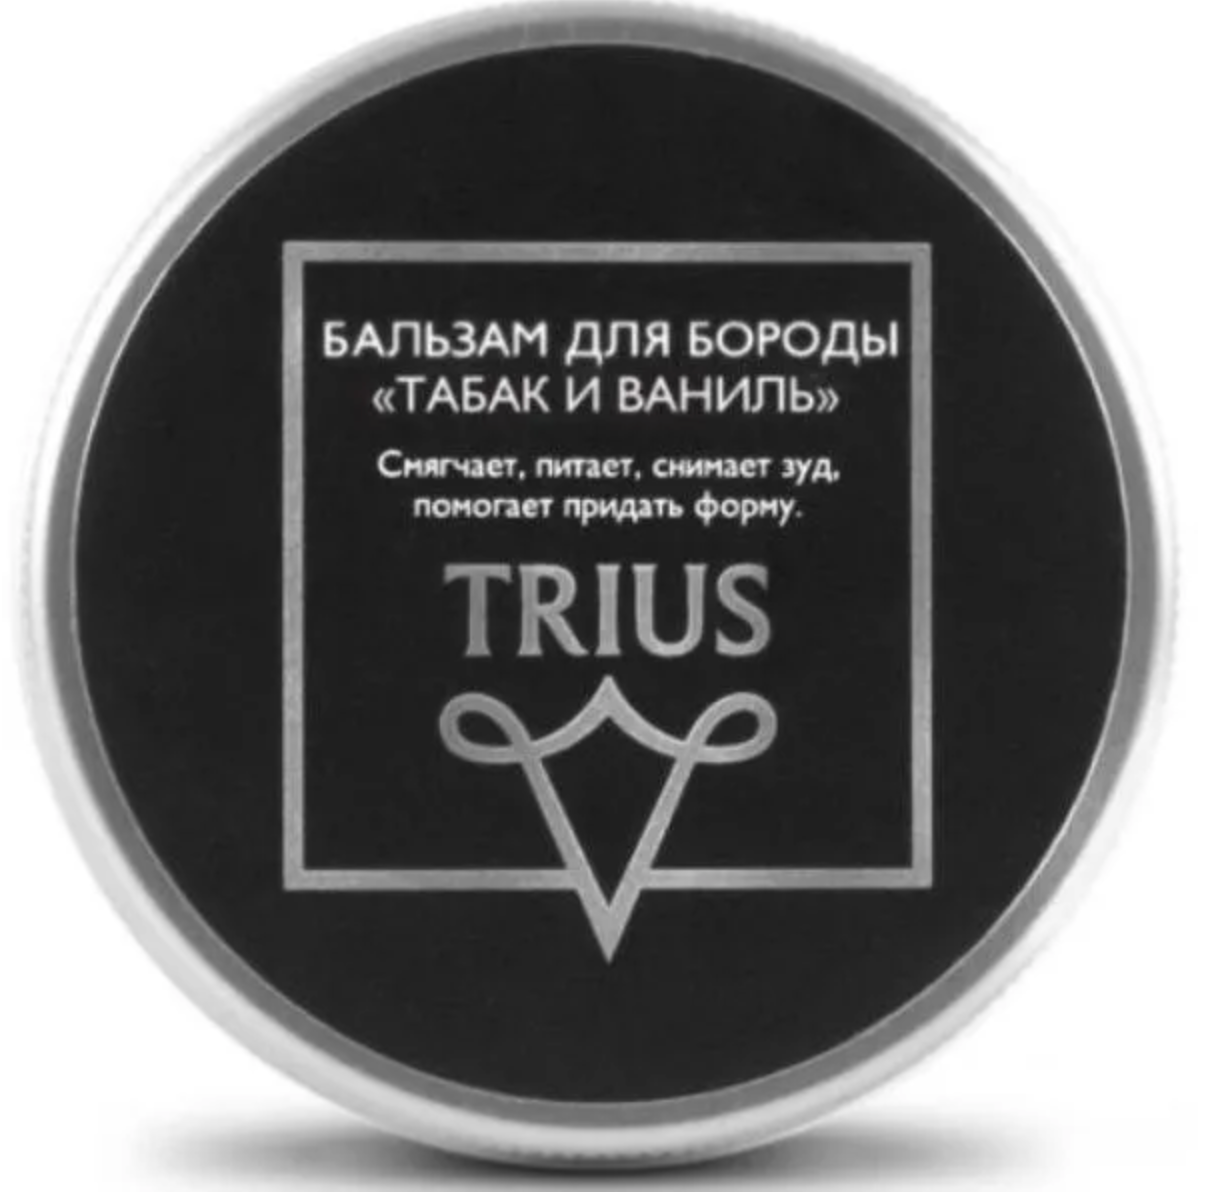 Trius Beard Balm Питательный, увлажняющий и смягчающий бальзам для бороды Табак и Ваниль Триус 50 мл